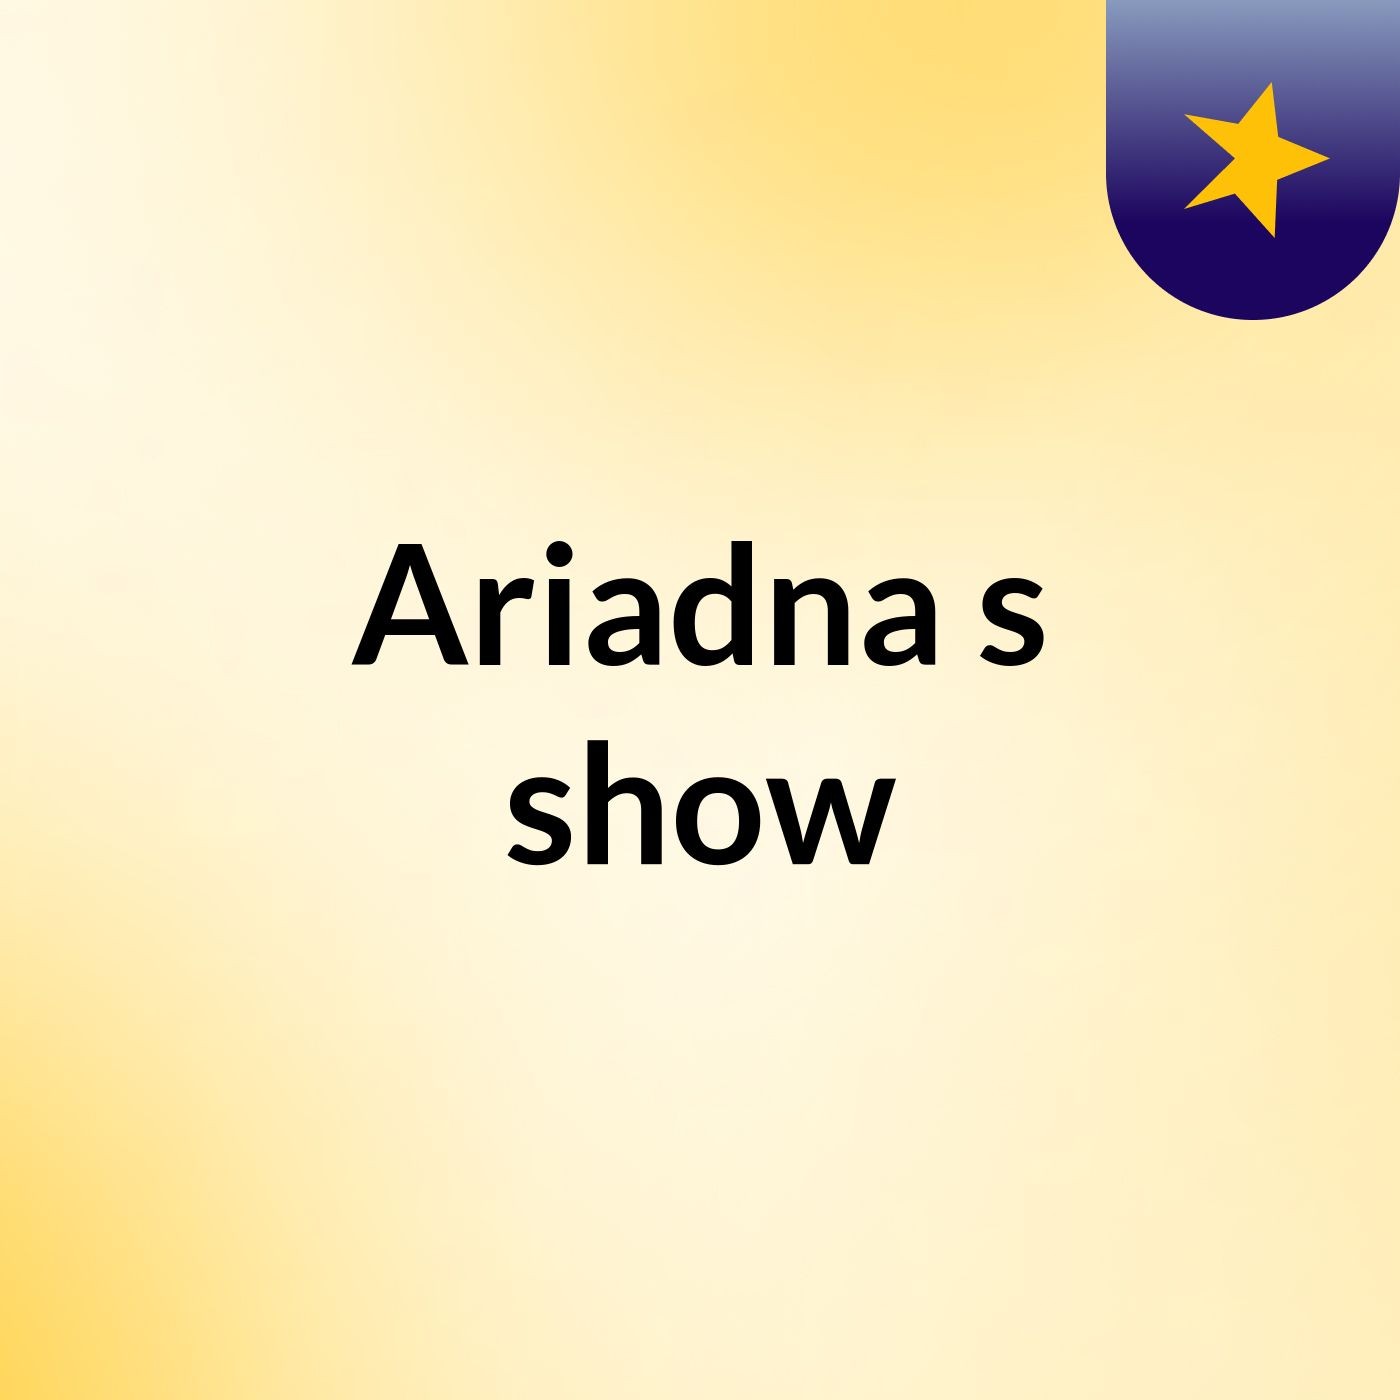 Ariadna's show